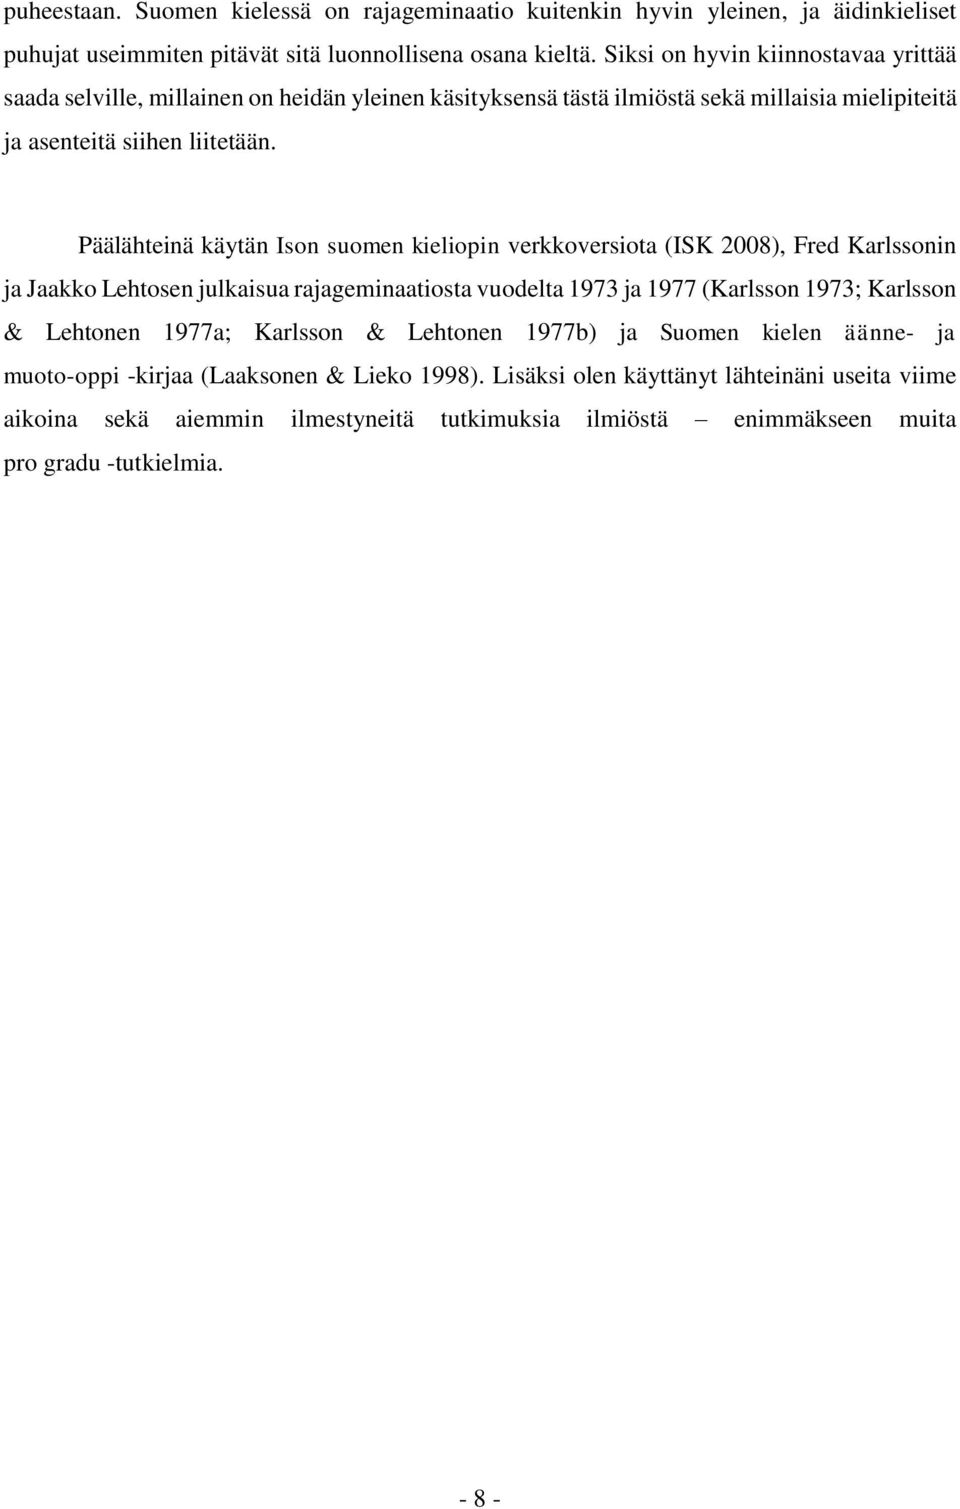 Päälähteinä käytän Ison suomen kieliopin verkkoversiota (ISK 2008), Fred Karlssonin ja Jaakko Lehtosen julkaisua rajageminaatiosta vuodelta 1973 ja 1977 (Karlsson 1973; Karlsson & Lehtonen